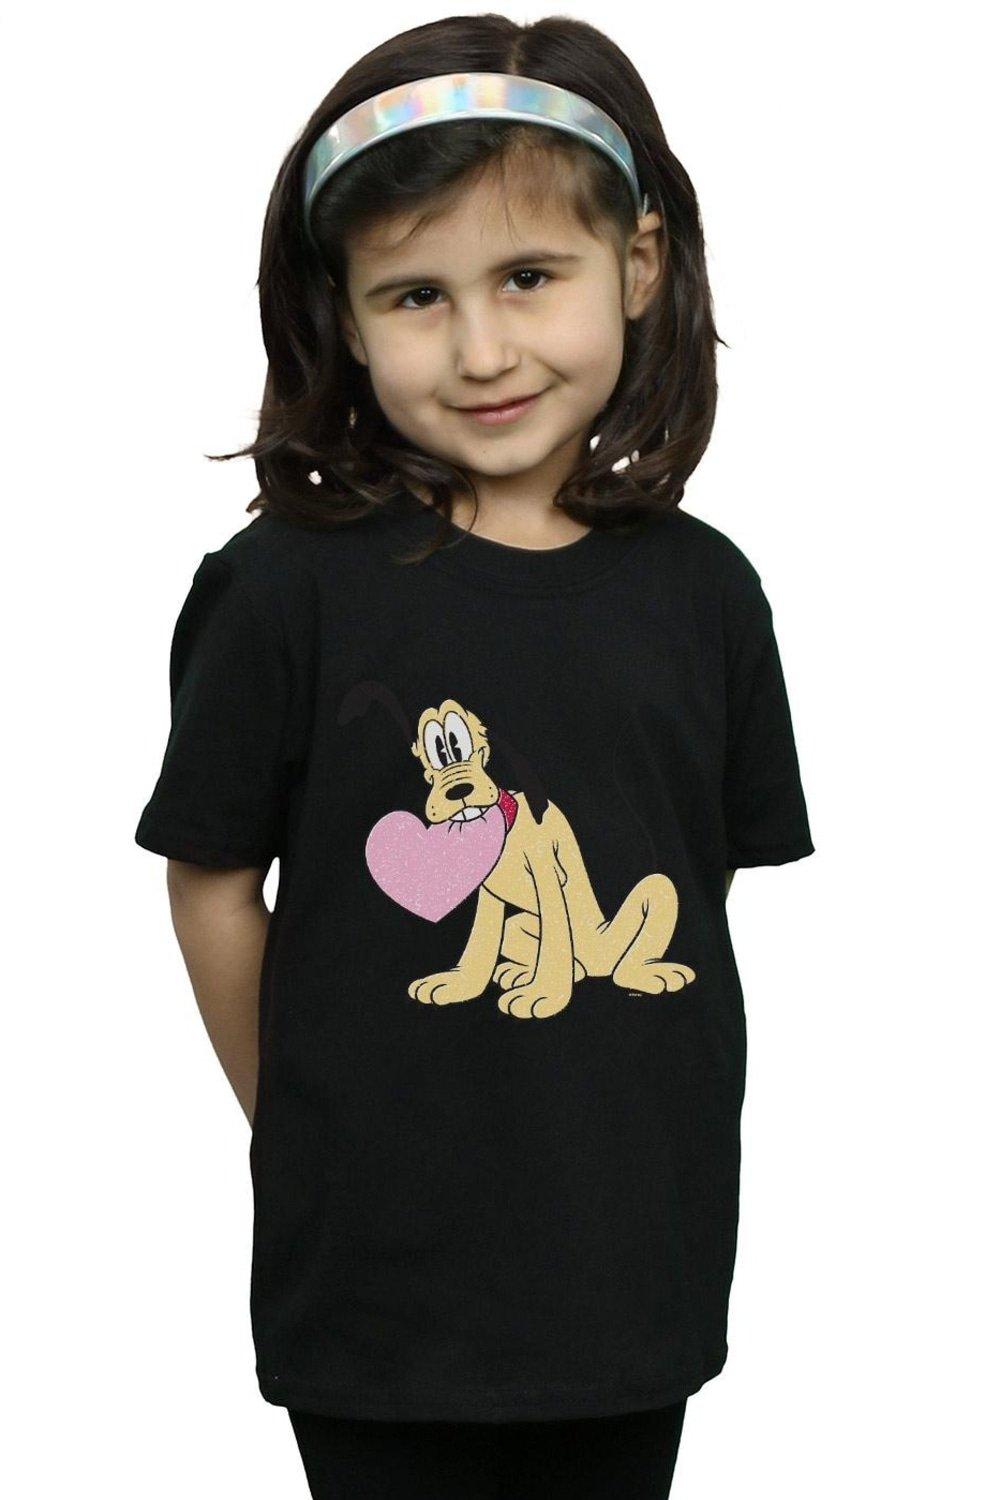 Хлопковая футболка Pluto Love Heart Disney, черный